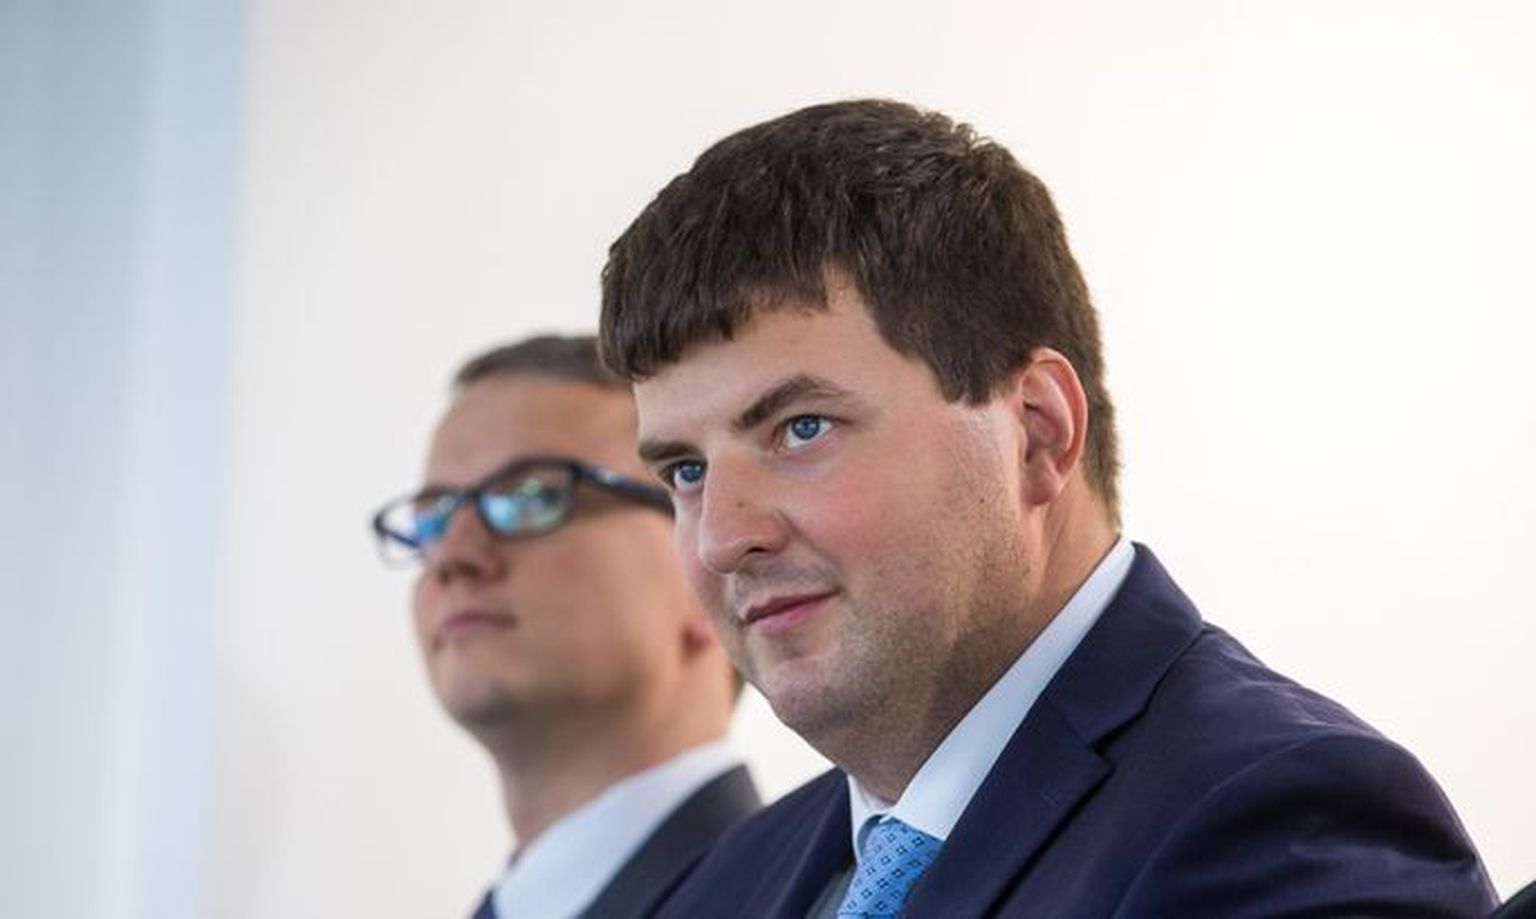 Бывшие руководители Nordica Ахто Пярл и Свен Кукемелк ушли в бизнес и учредили новое предприятие.